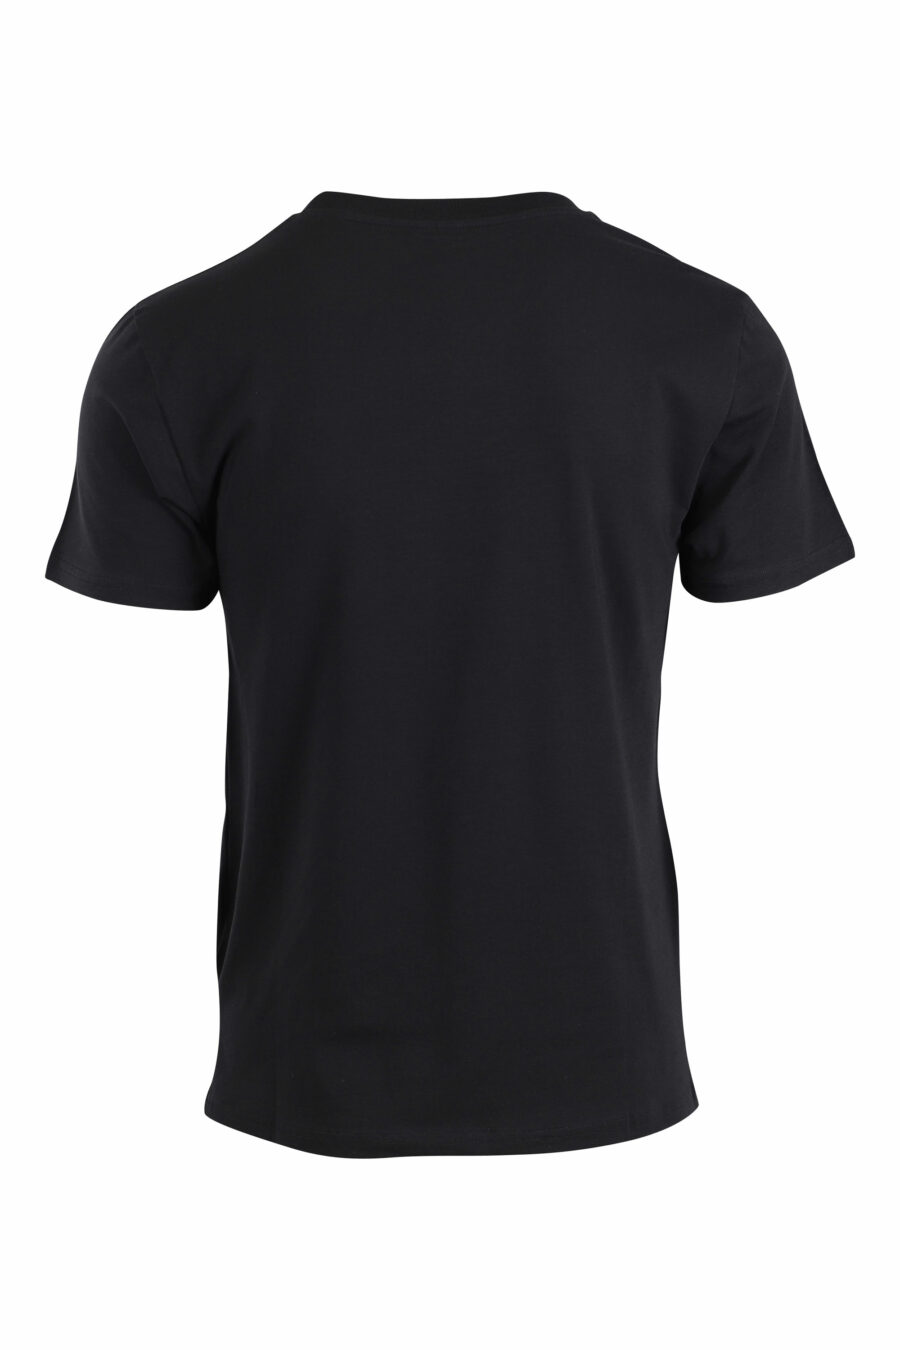 Camiseta negra con logo pequeño dorado con strass - IMG 2649